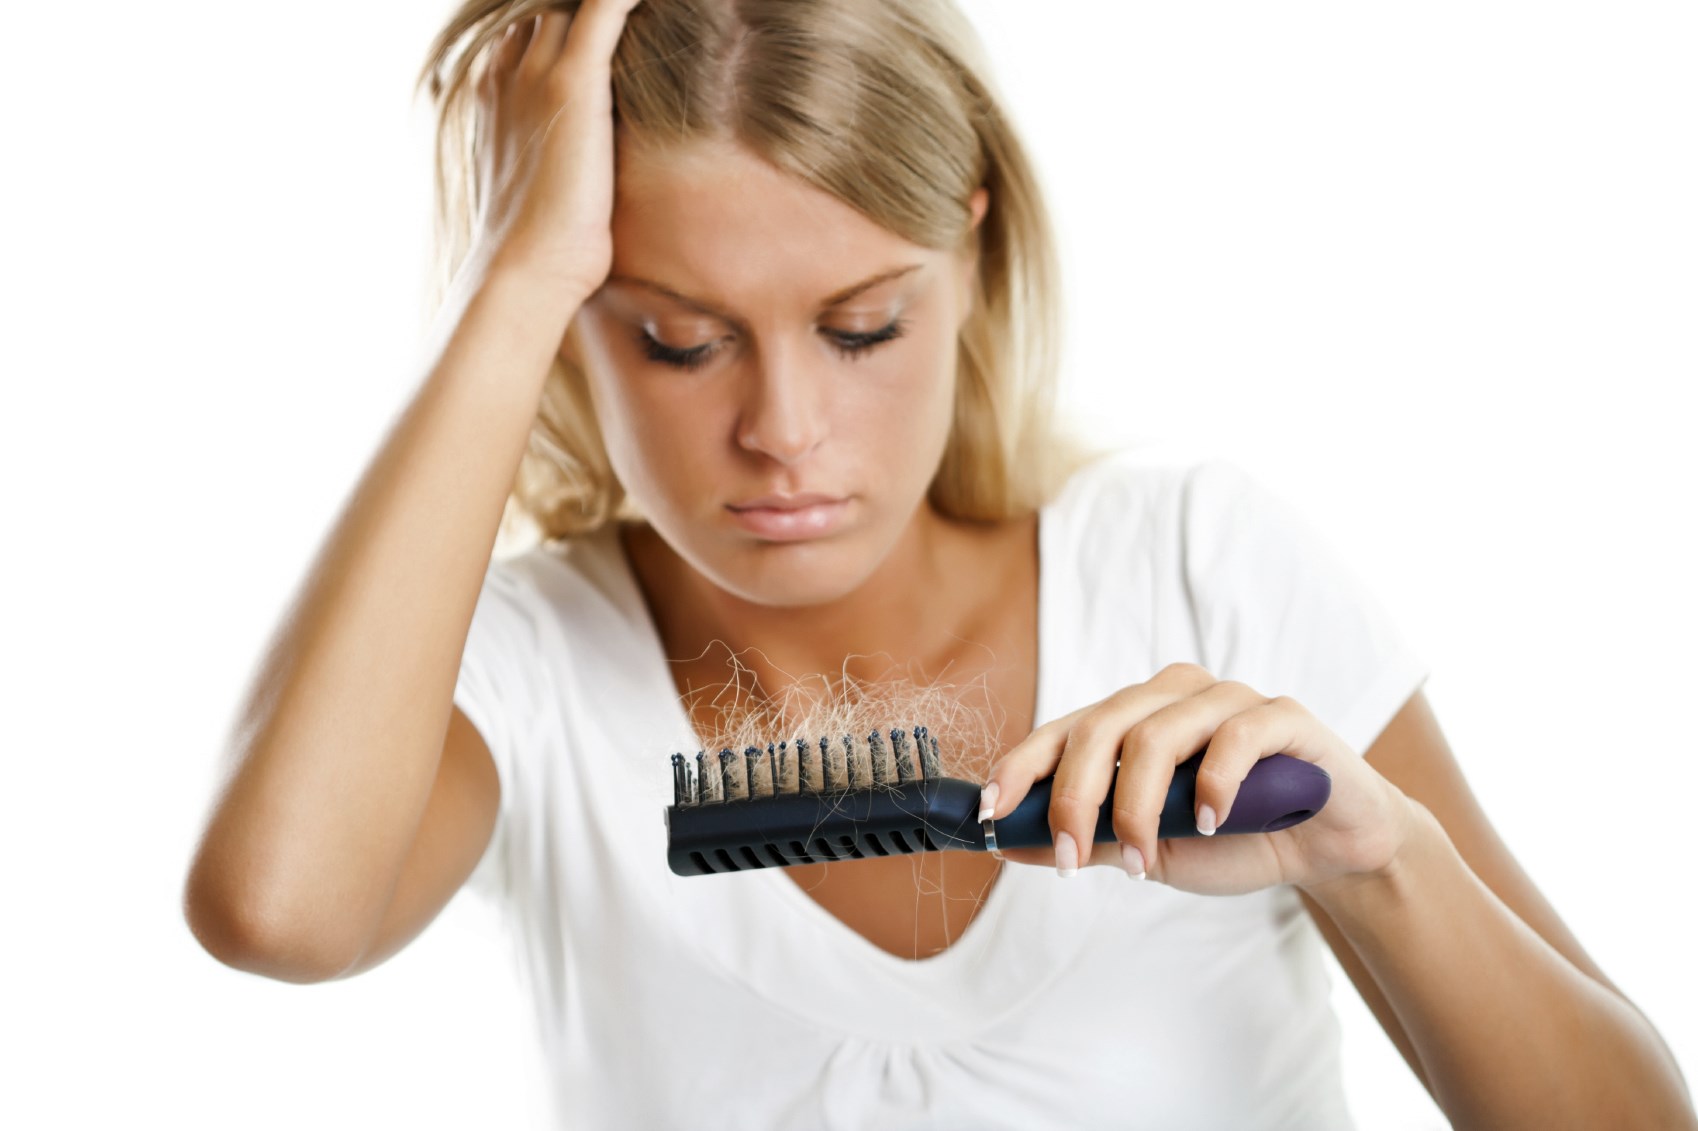 Лечение выпадения волос у детей